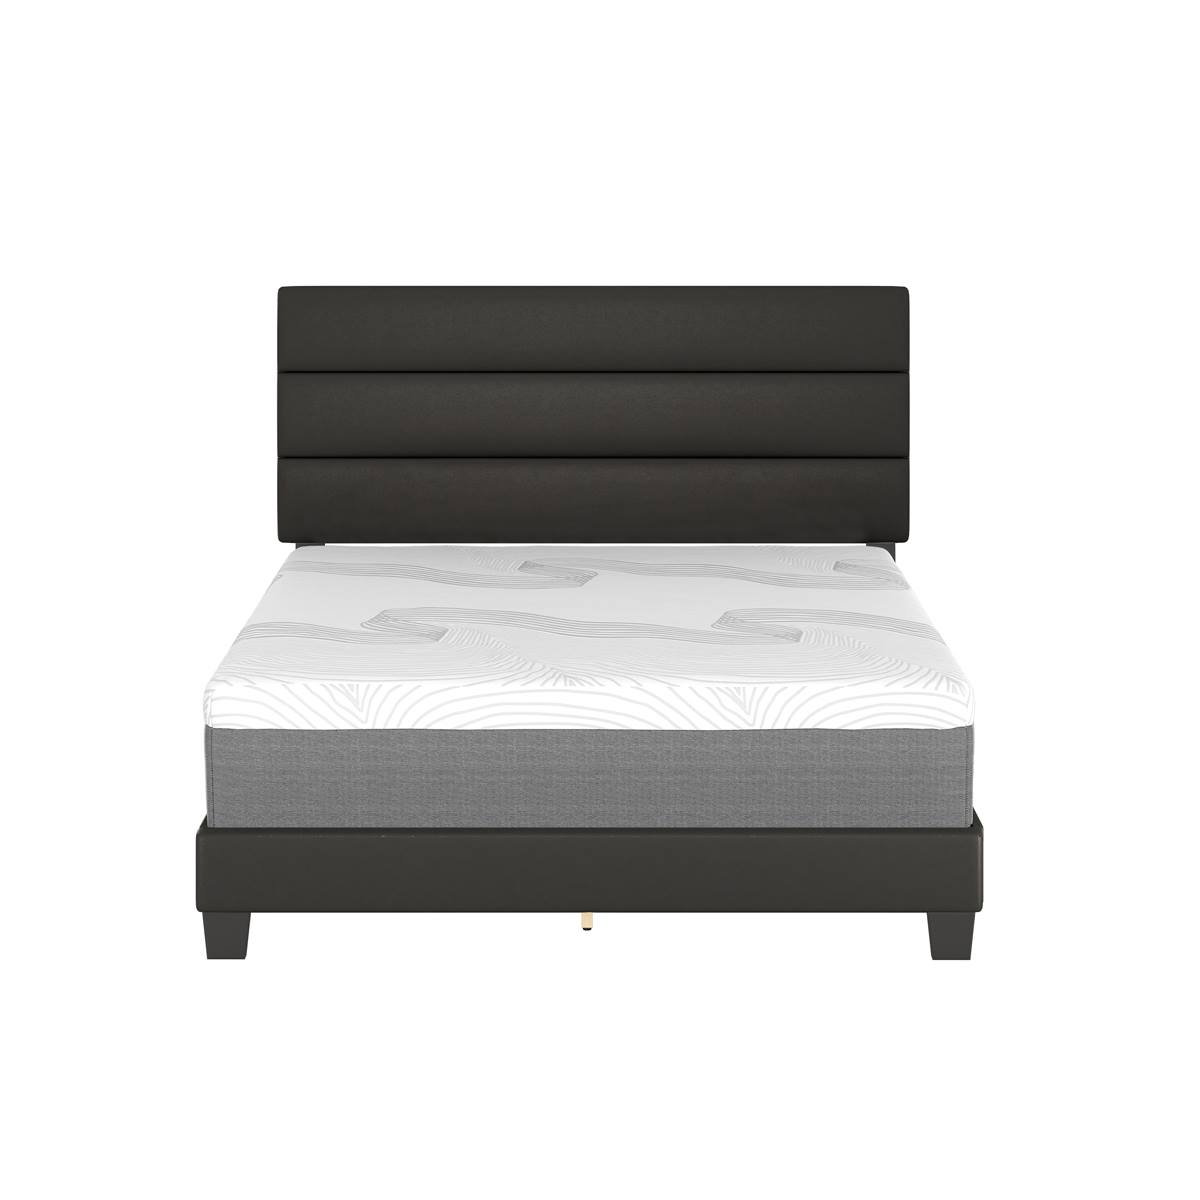 Boyd Sleep Grand Elegance Prestyn Platform Bed Frame - Twin